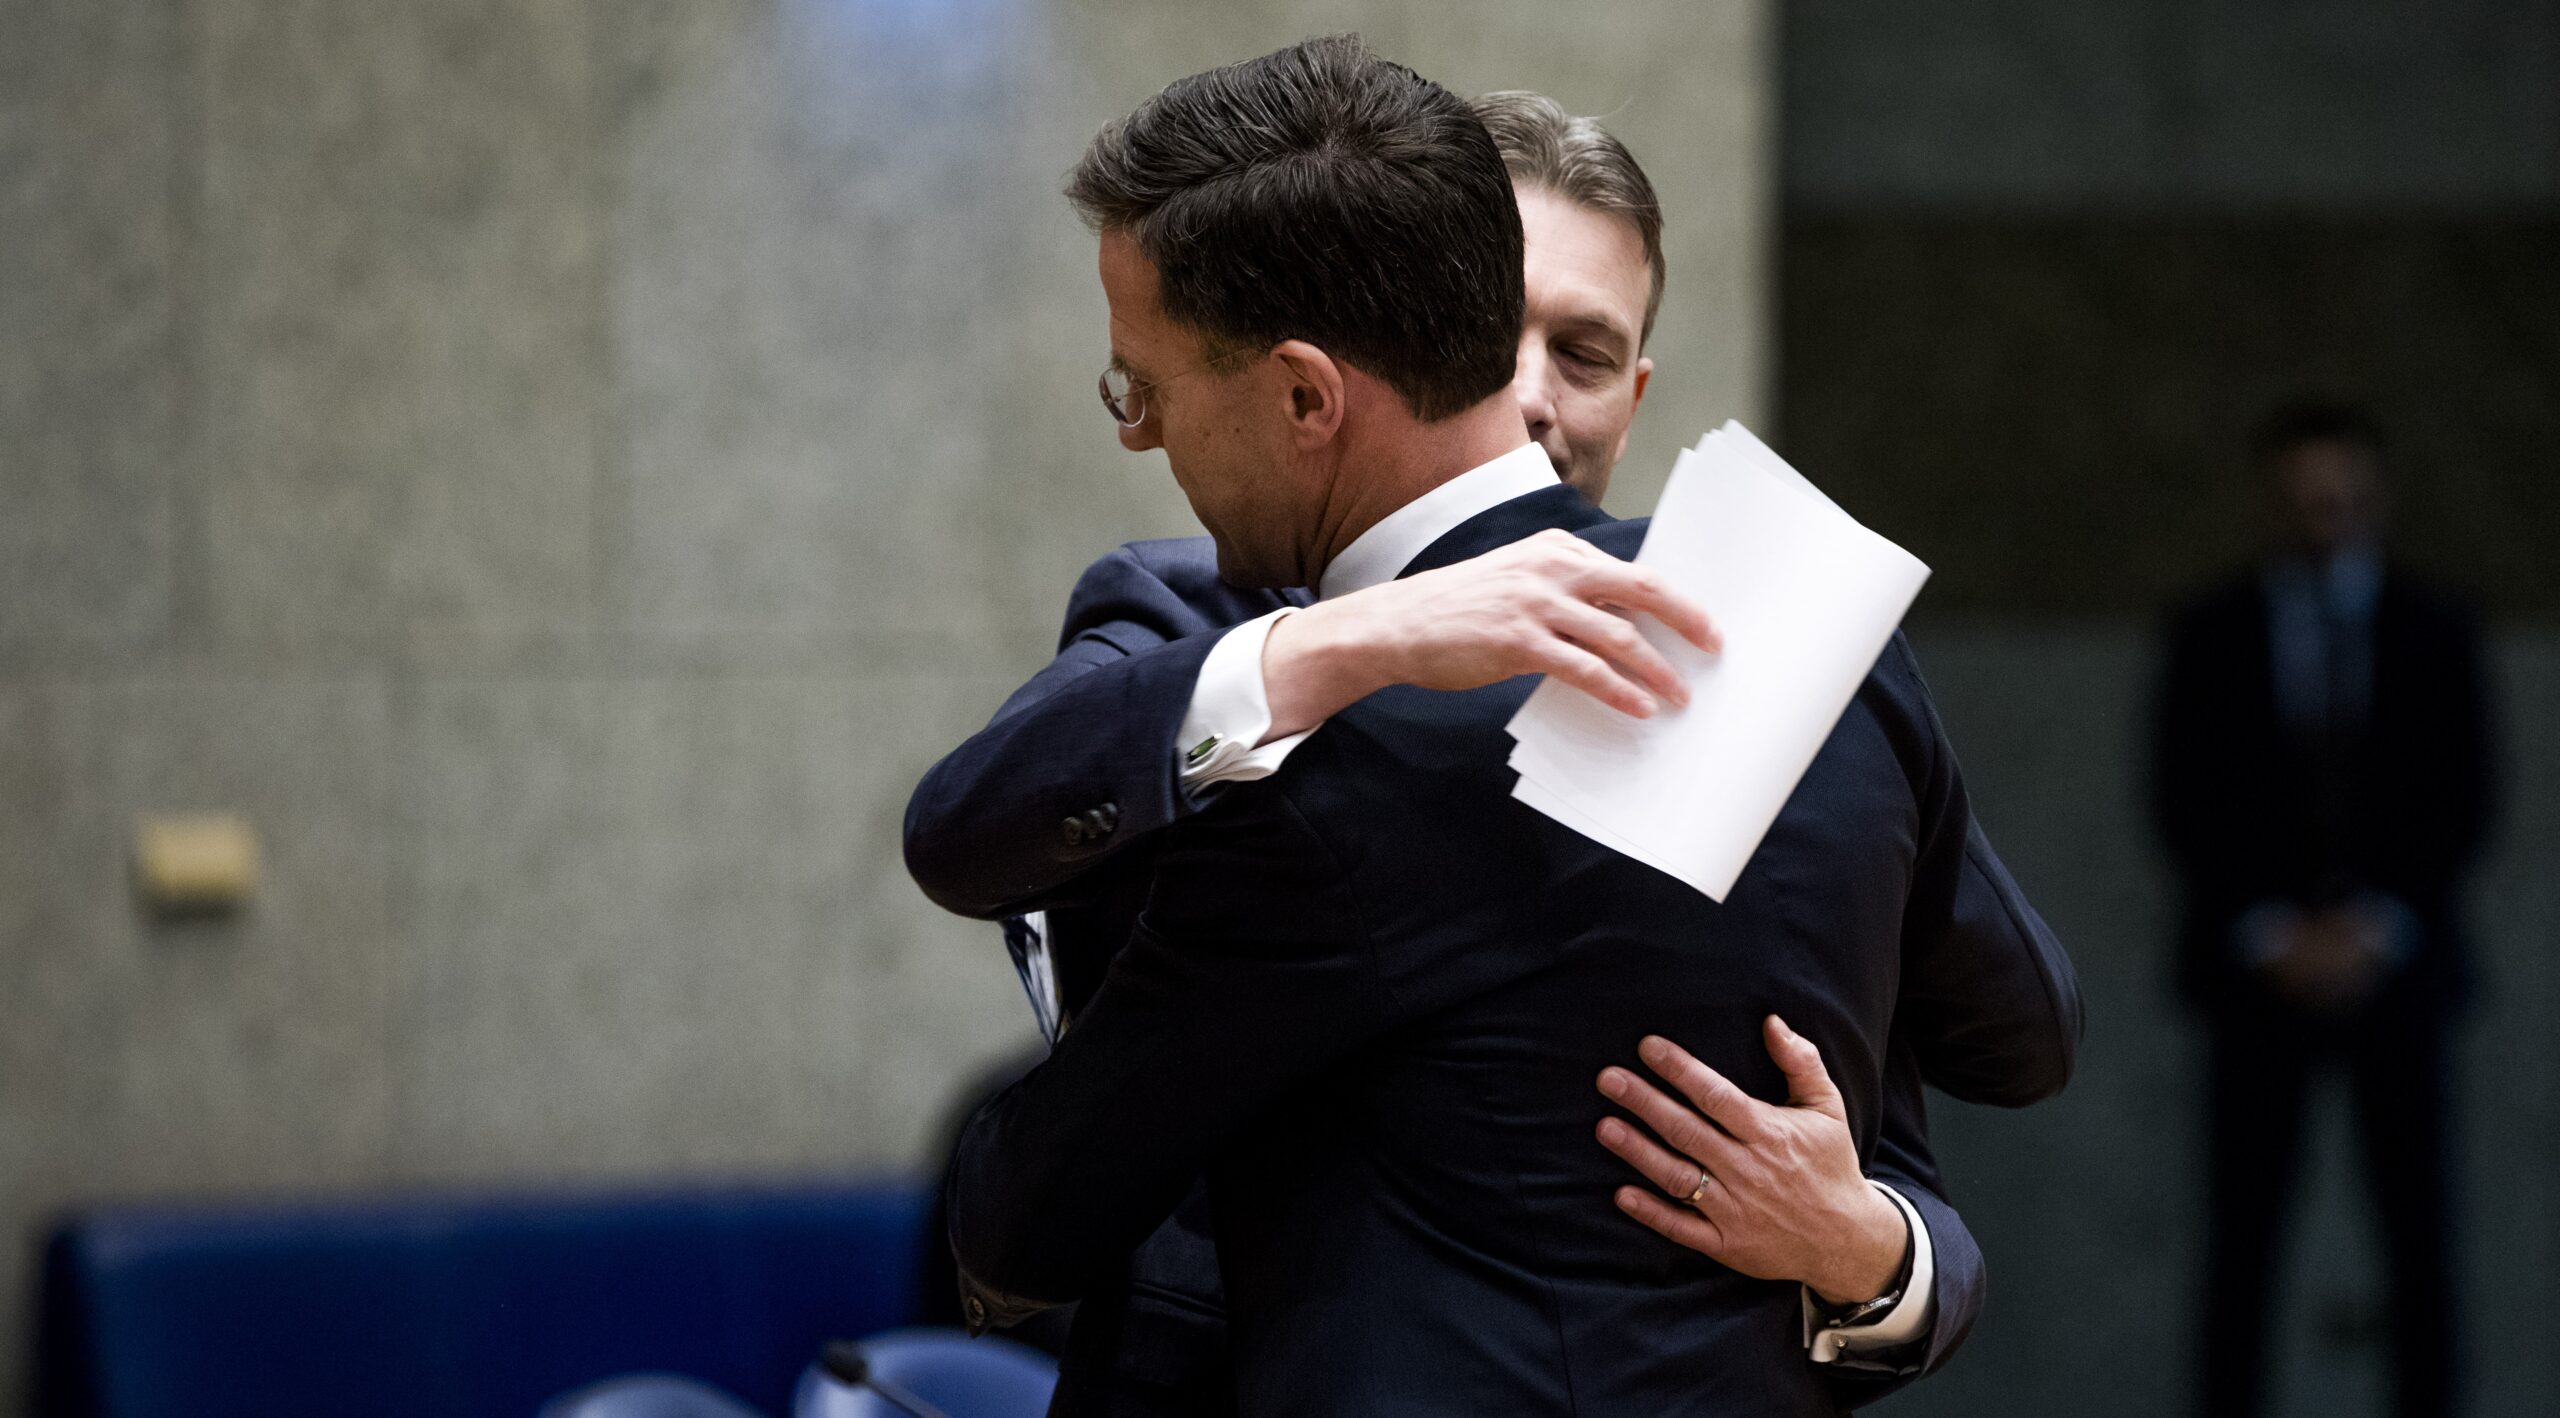 VVD-minister Halbe Zijlstra en premier Mark Rutte omhelzen elkaar, nadat Zijlstra zijn aftreden bekendmaakte. Foto: Freek van den Bergh via ANP.